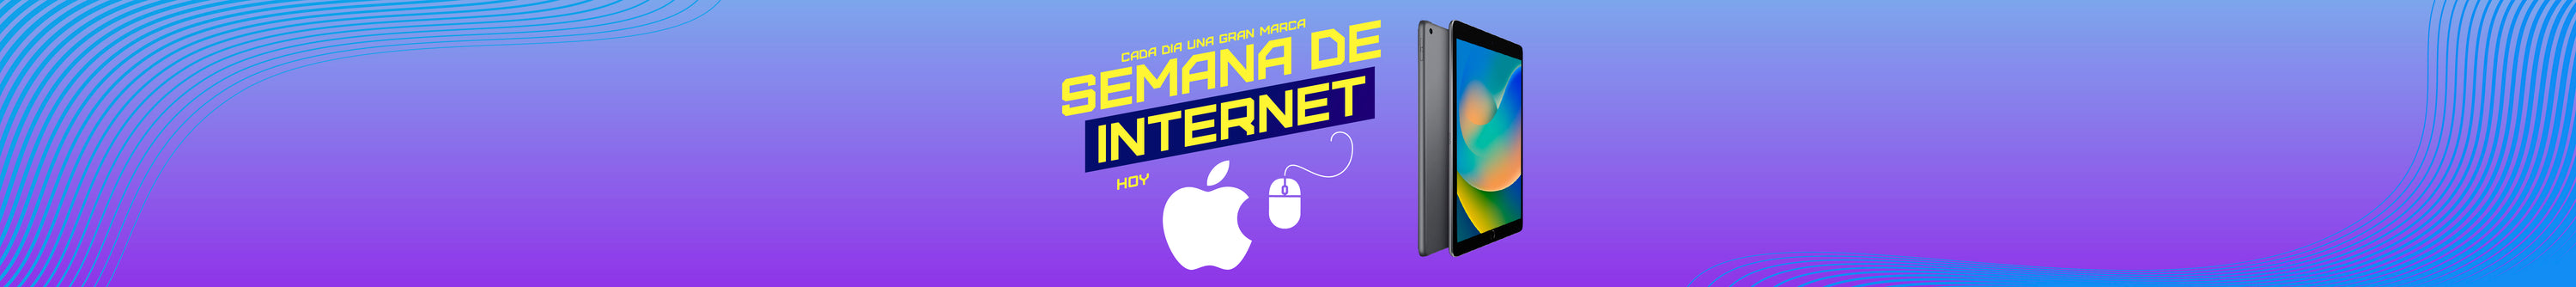 semana de internet especial apple, ipad, ipad pro y macbook pro en superoferta